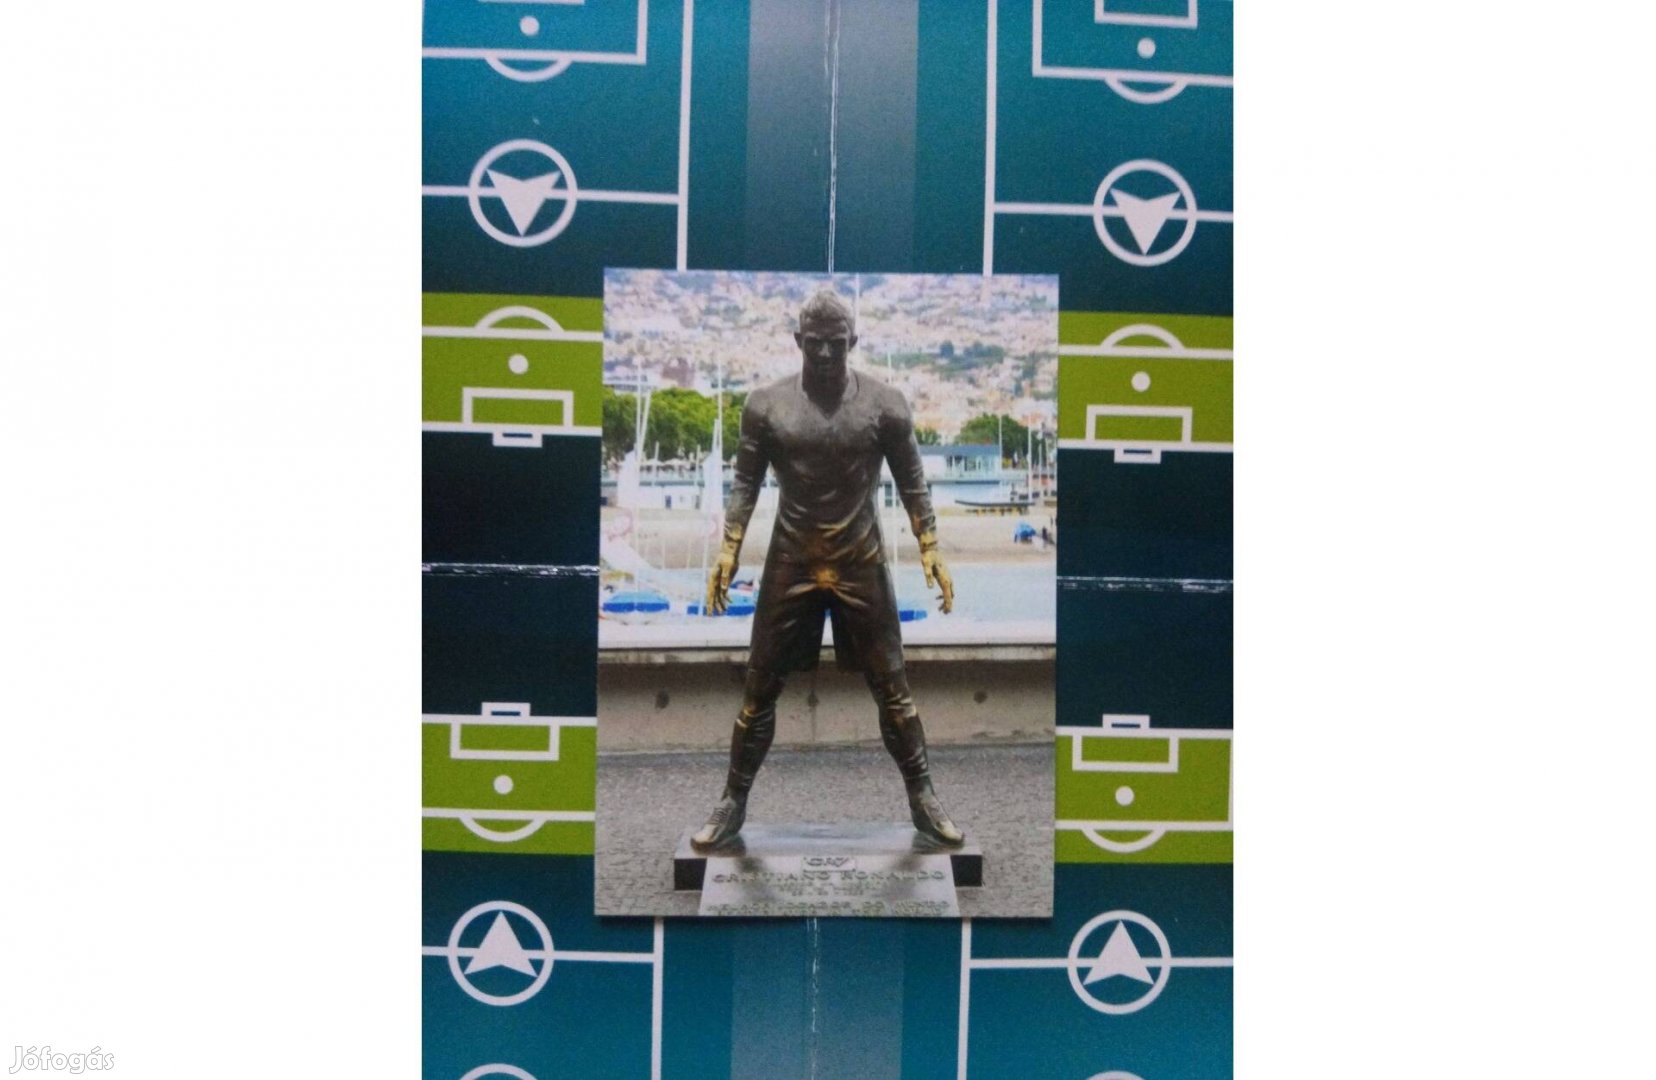 Ronaldo focis kártya